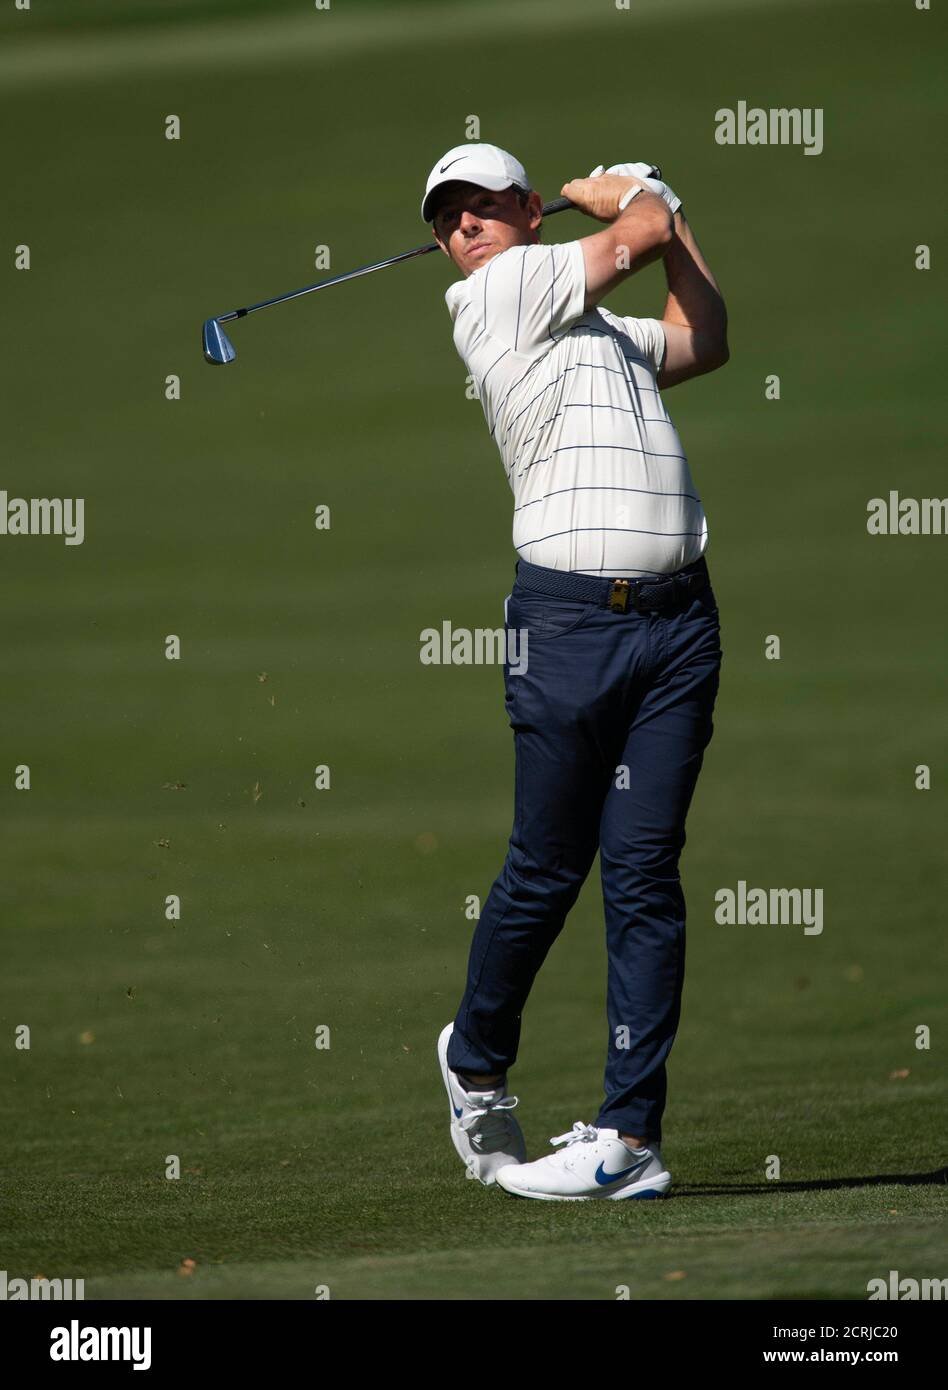 Rory McIlroy pendant la deuxième journée du championnat BMW PGA au club de golf de Wentworth, Surrey. CRÉDIT PHOTO : © MARK PAIN / PHOTO DE STOCK D'ALAMY Banque D'Images